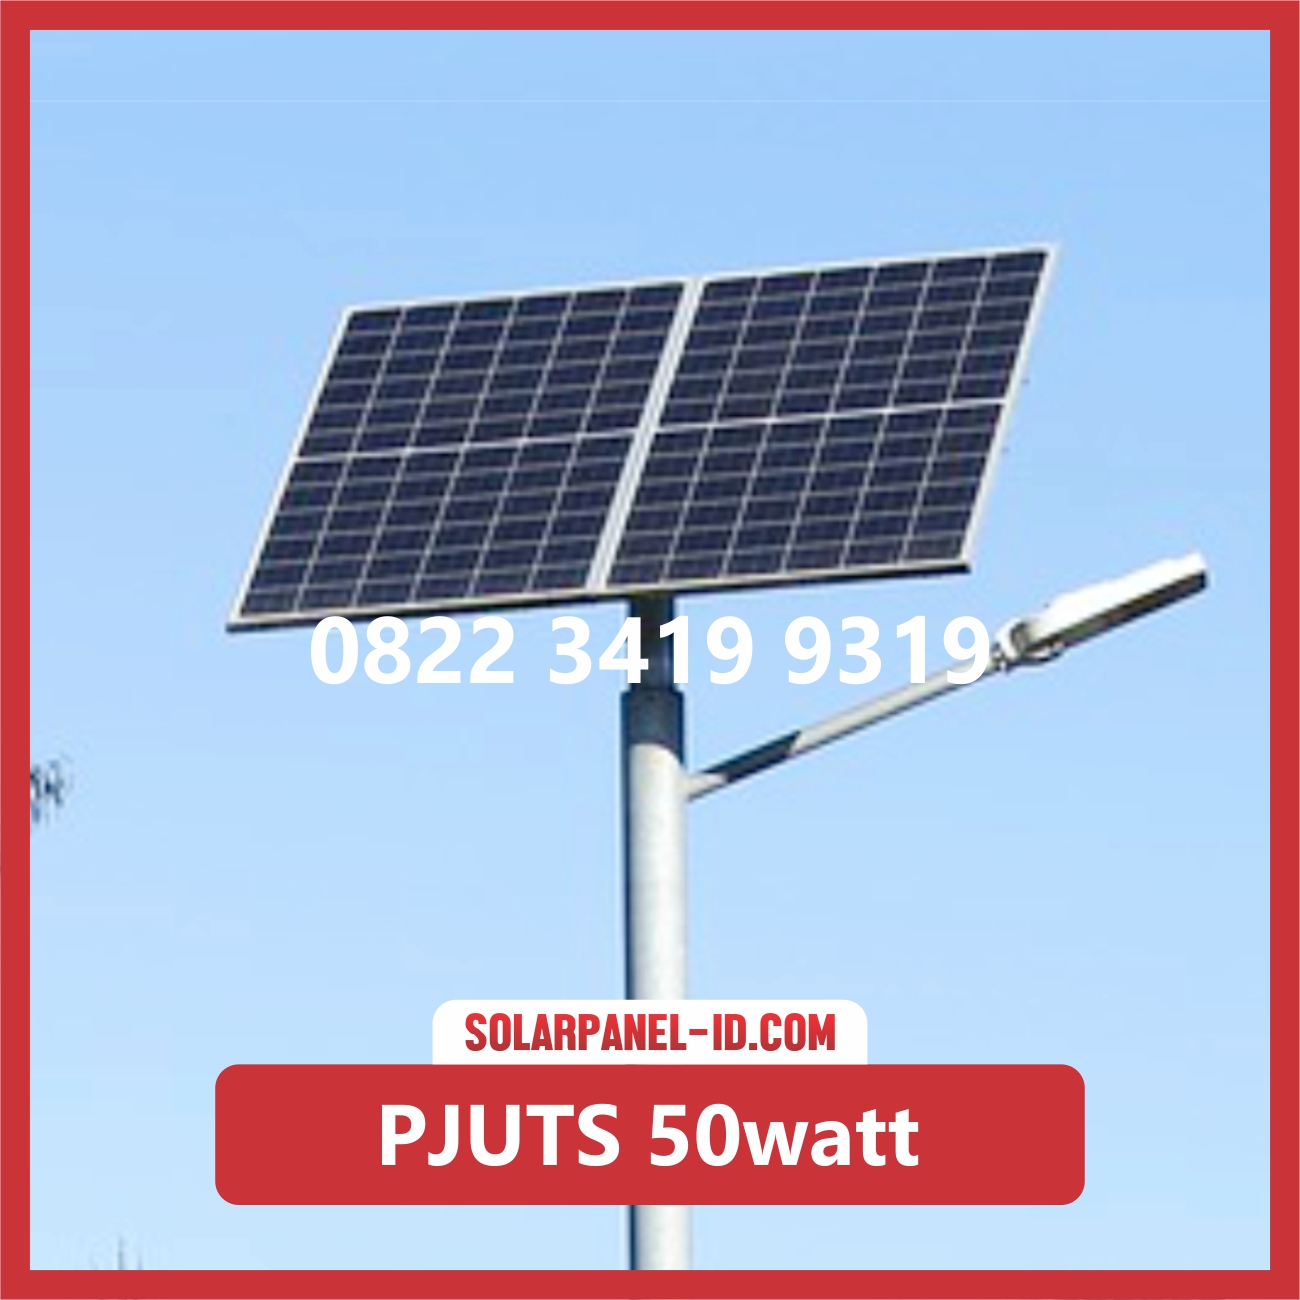 Jual Lampu Jalan Pju Solarcell 50 Watt Solarpanel Id Tepat digunakan untuk daerah yang belum terjangkau jaringan. pju tenaga surya pju solar cell